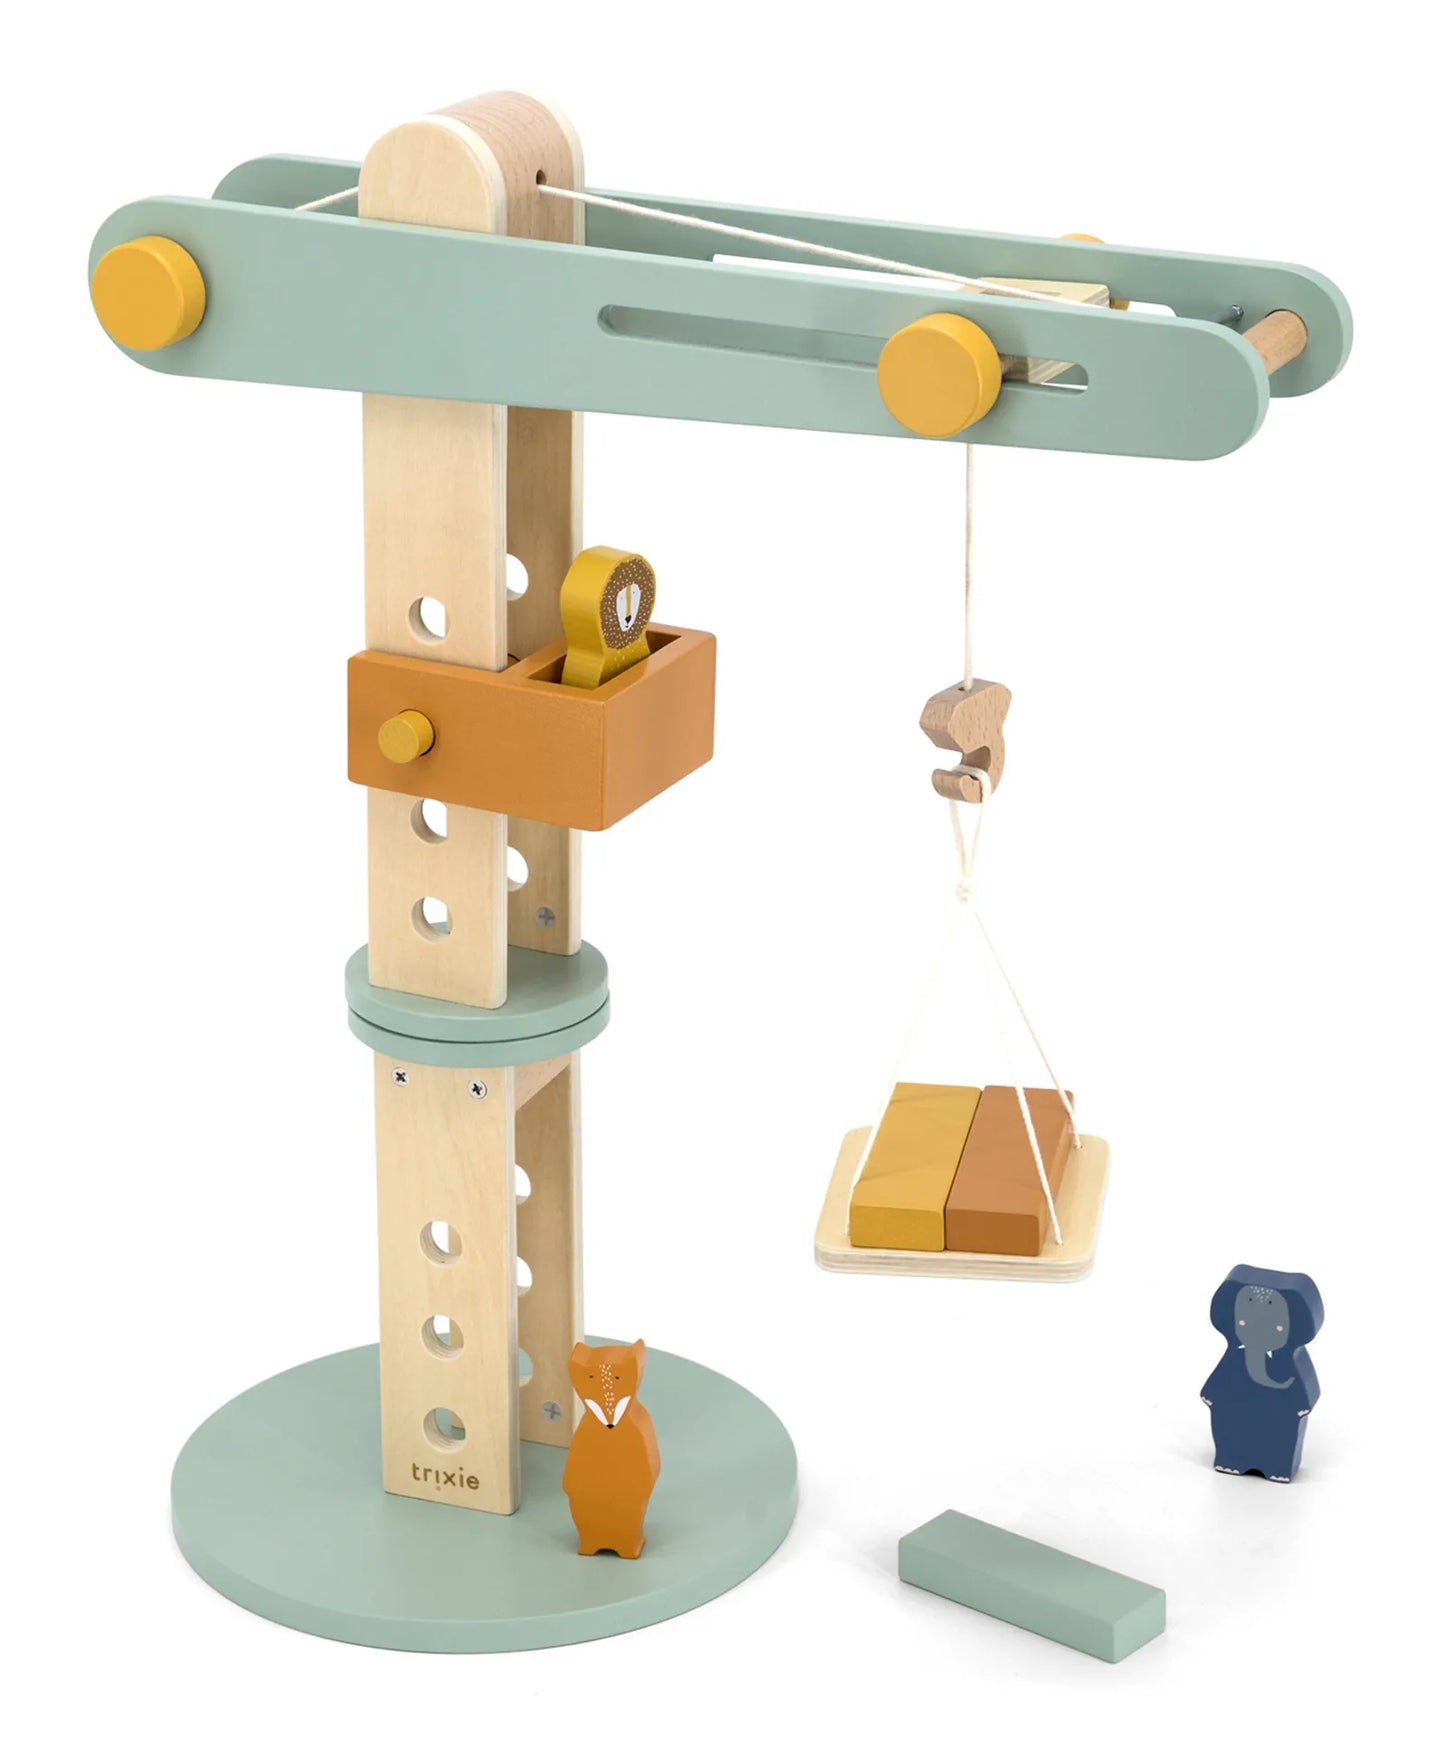 Trixie Wooden Construction Crane